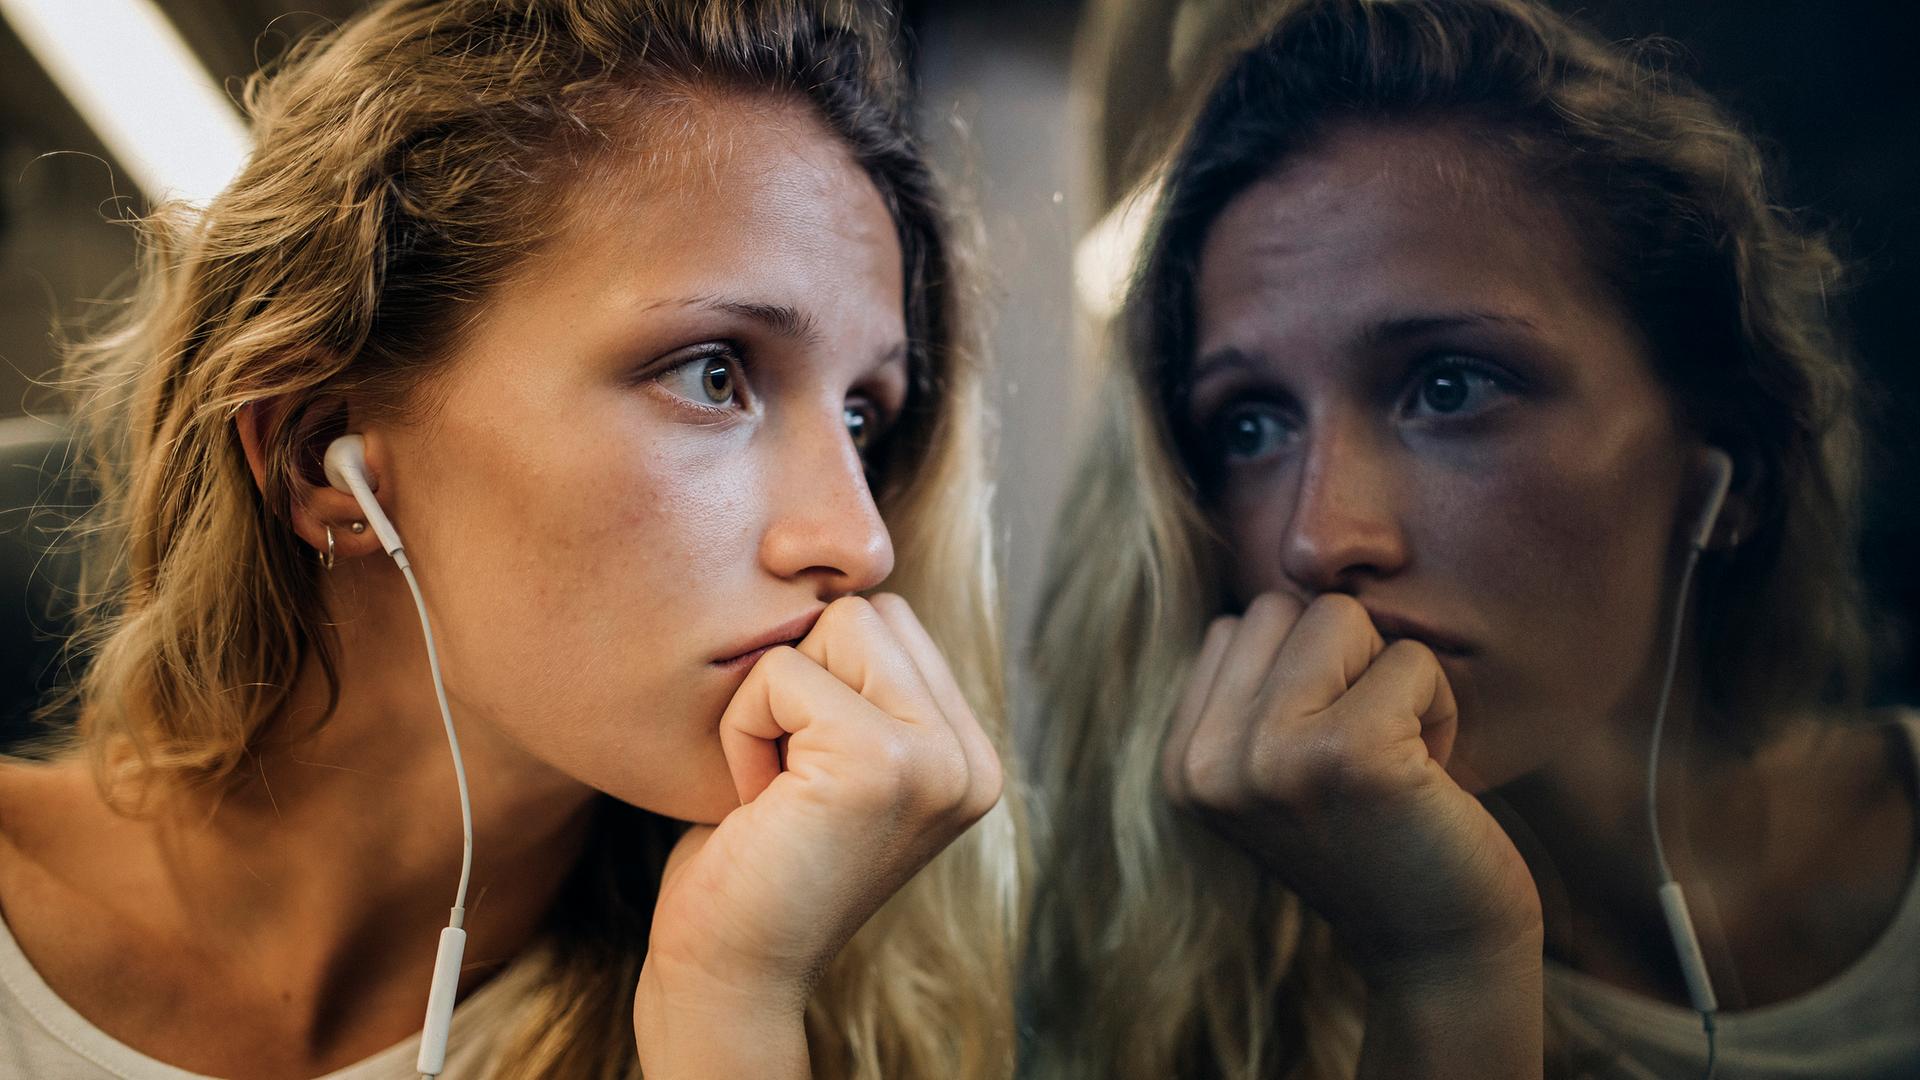 Eine junge Frau mit blonden Locken sitzt mit Kopfhörern am Zugfenster und schaut traurig aus dem Fenster, in dem sich ihr Gesicht spiegelt.